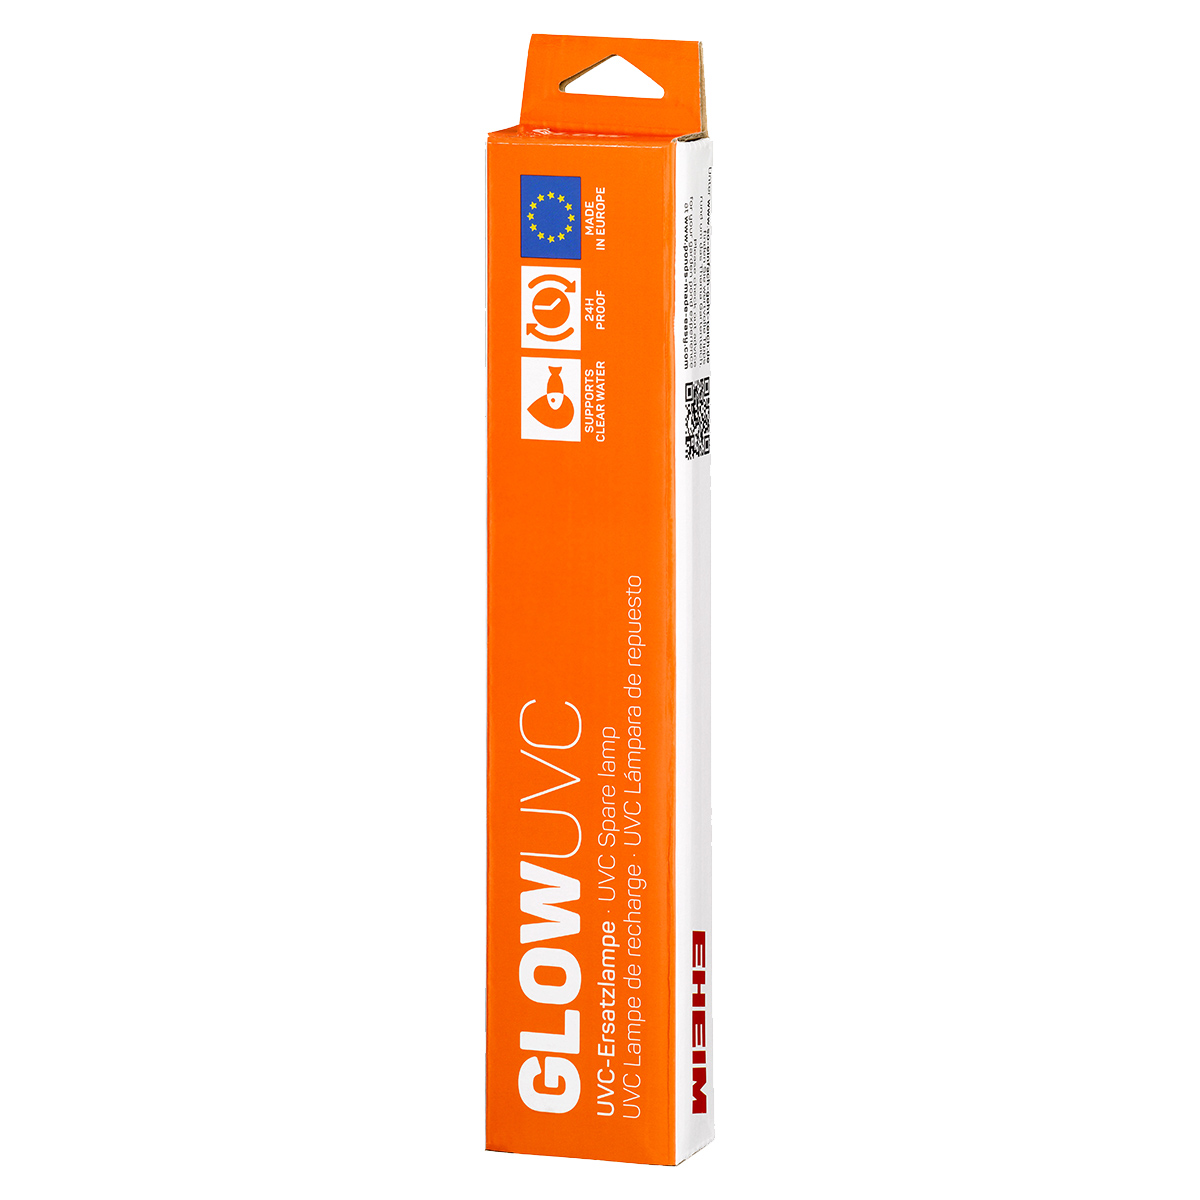 EHEIM GLOWUVC náhradní žárovka pro CLEARUVC 36 W